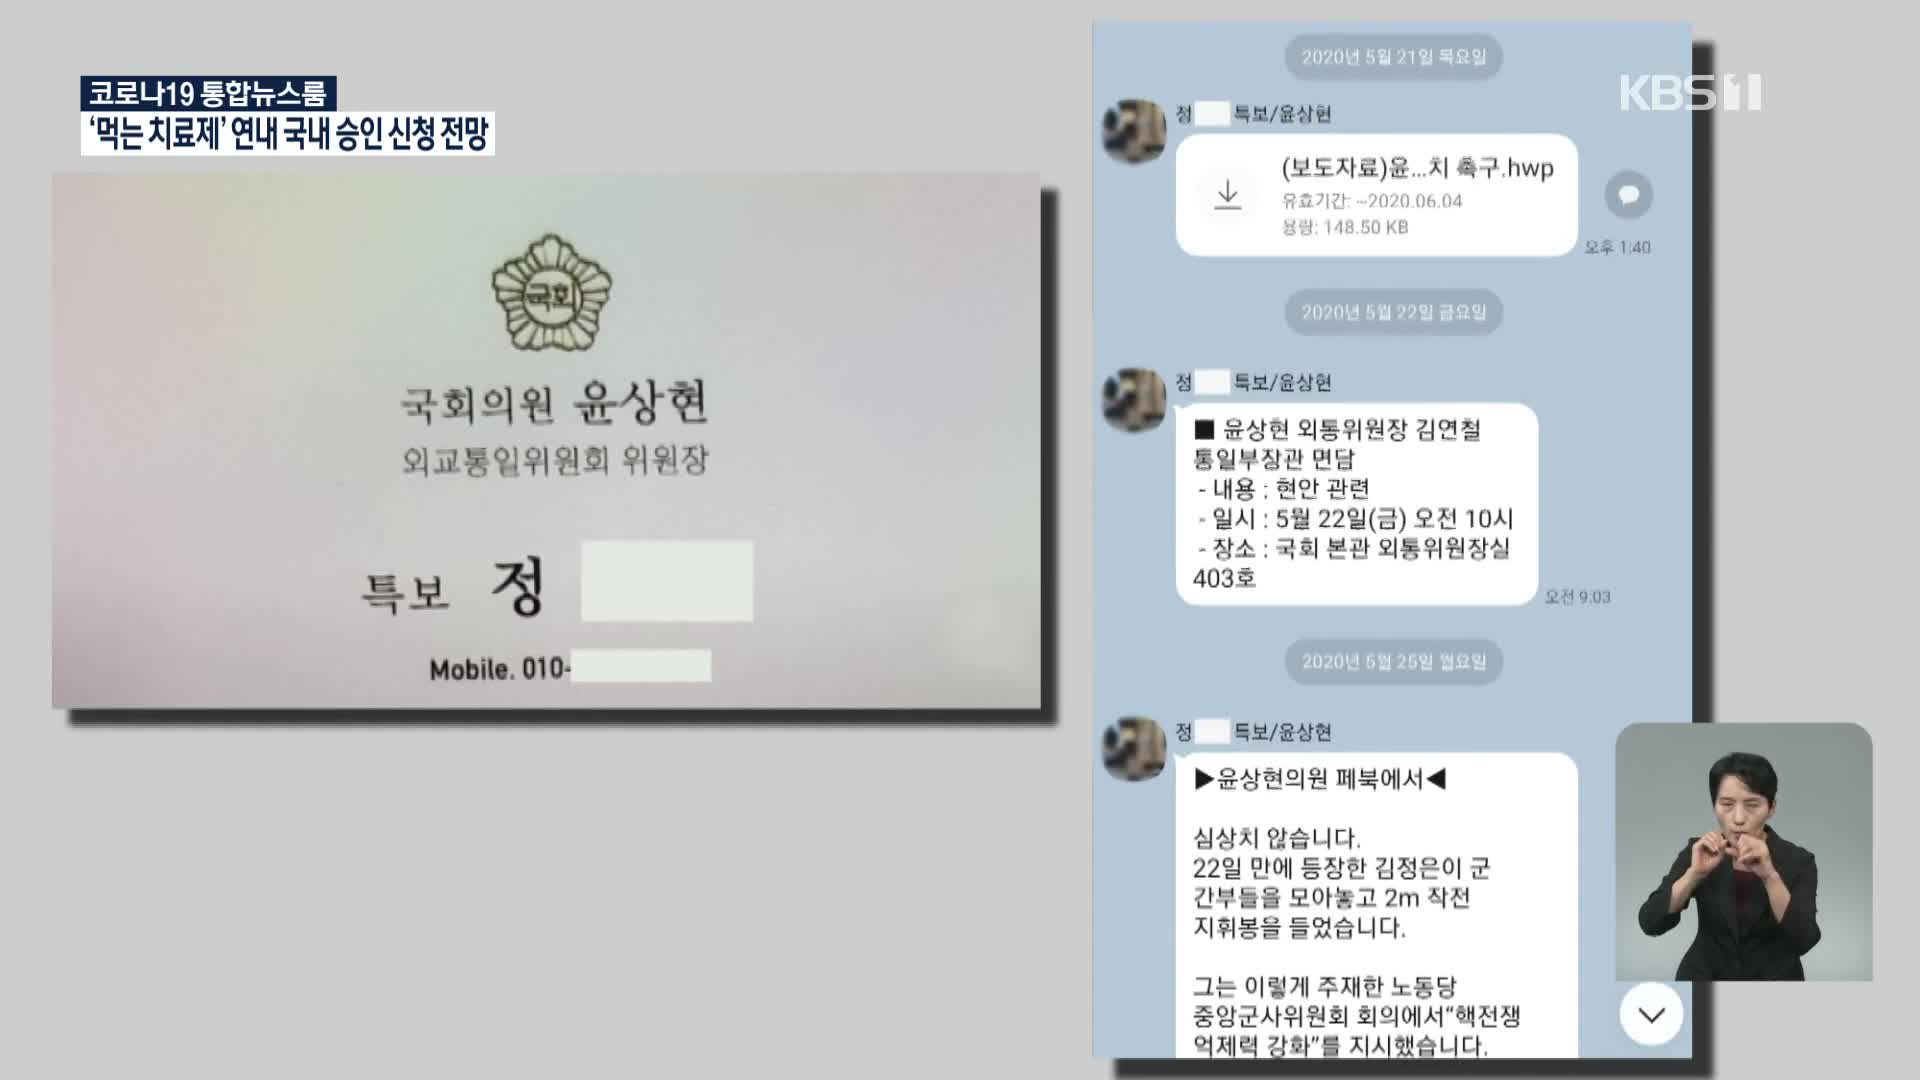 윤상현 의원 전 특보 “휴대전화·하드디스크 없애자”